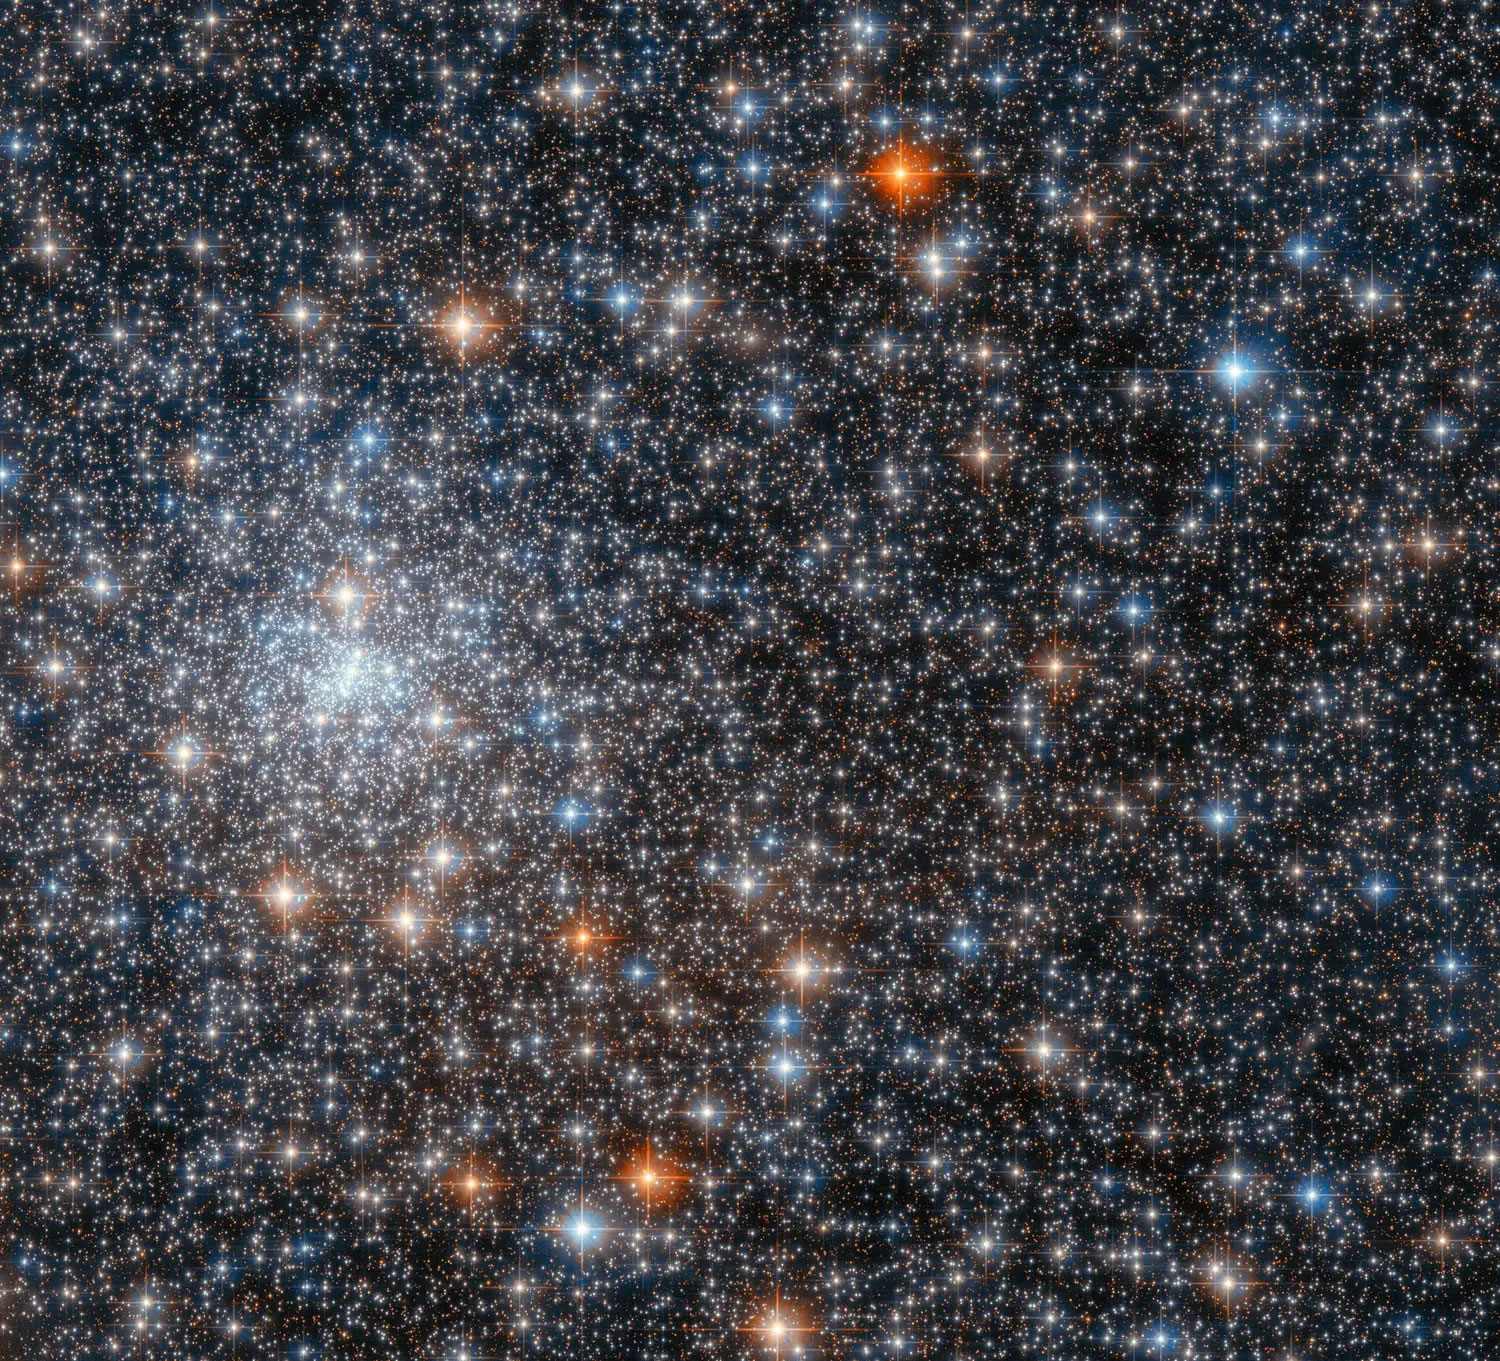 哈勃太空望远镜拍摄的人马座球状星团NGC 6558